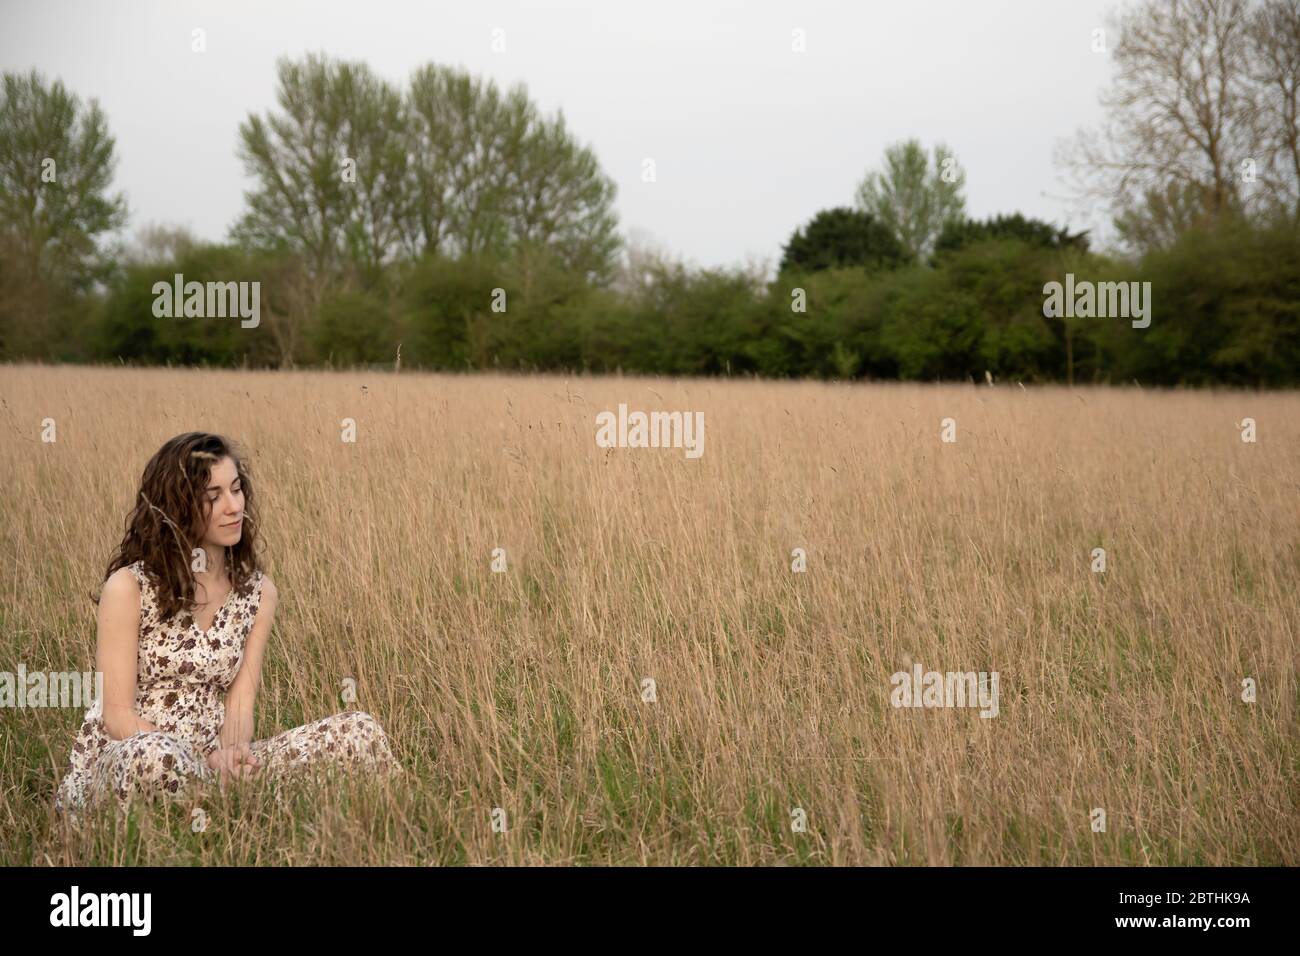 Eine schöne und gesunde junge Frau im Kleid tanzt friedlich meditierend und denkend in einem braunen Grasfeld bei Sonnenuntergang Stockfoto